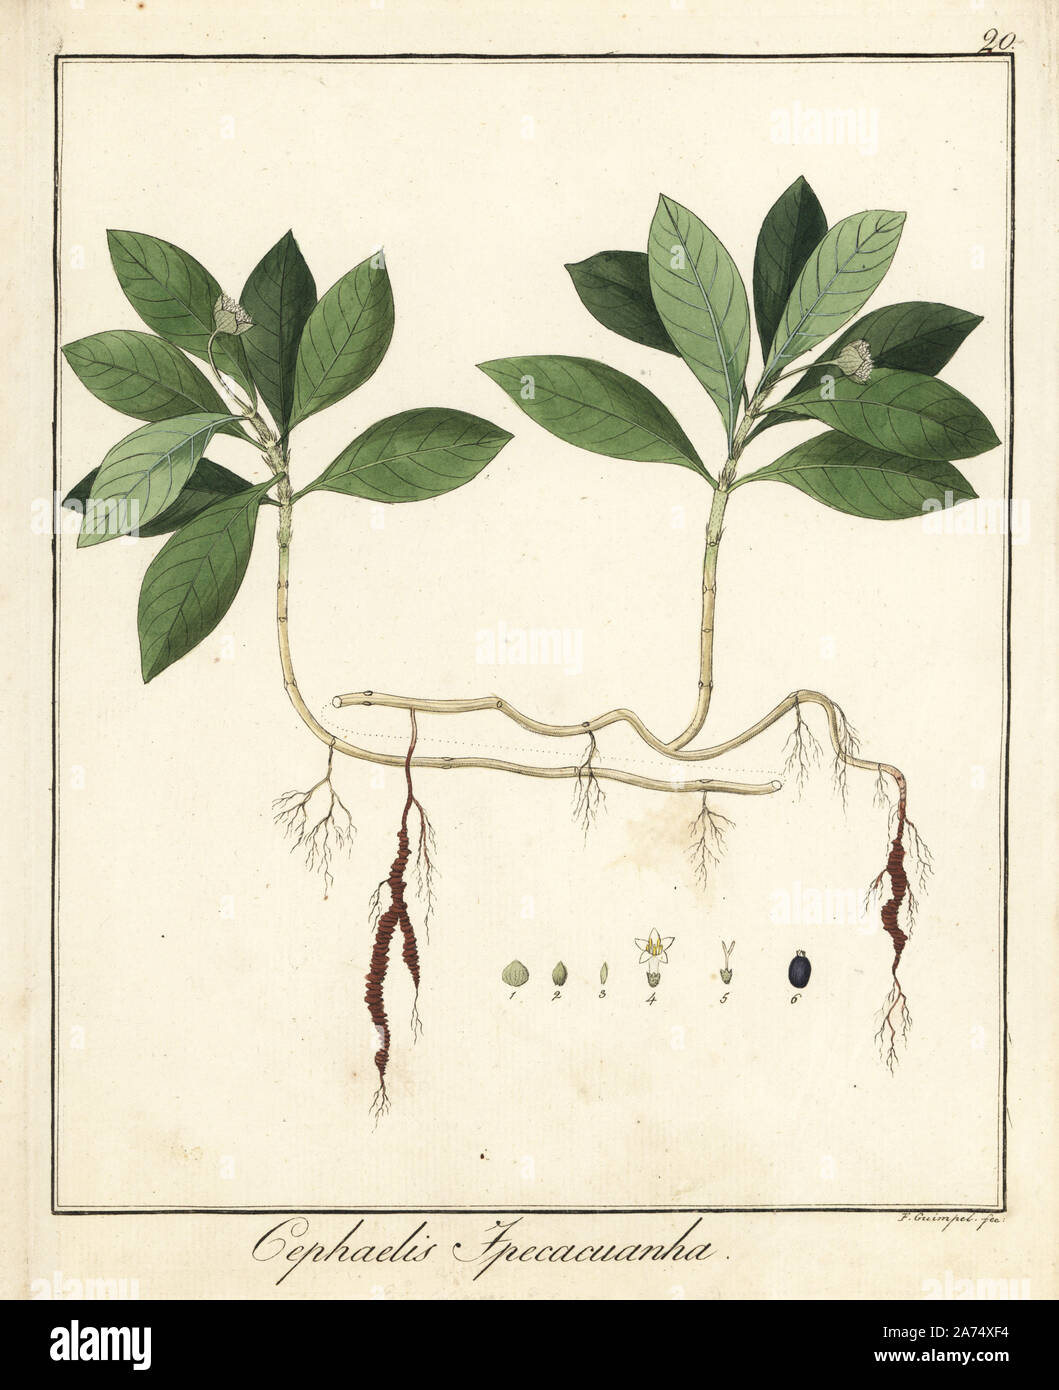 Ipecacuanha, Carapichea ipecacuanha. La gravure sur cuivre coloriée par F. Guimpel de Dr. Friedrich Gottlob Hayne's Botanique Médicale, Berlin, 1822. Hayne (1763-1832) était un botaniste allemand, apothicaire et professeur de botanique pharmaceutique à l'Université de Berlin. Banque D'Images